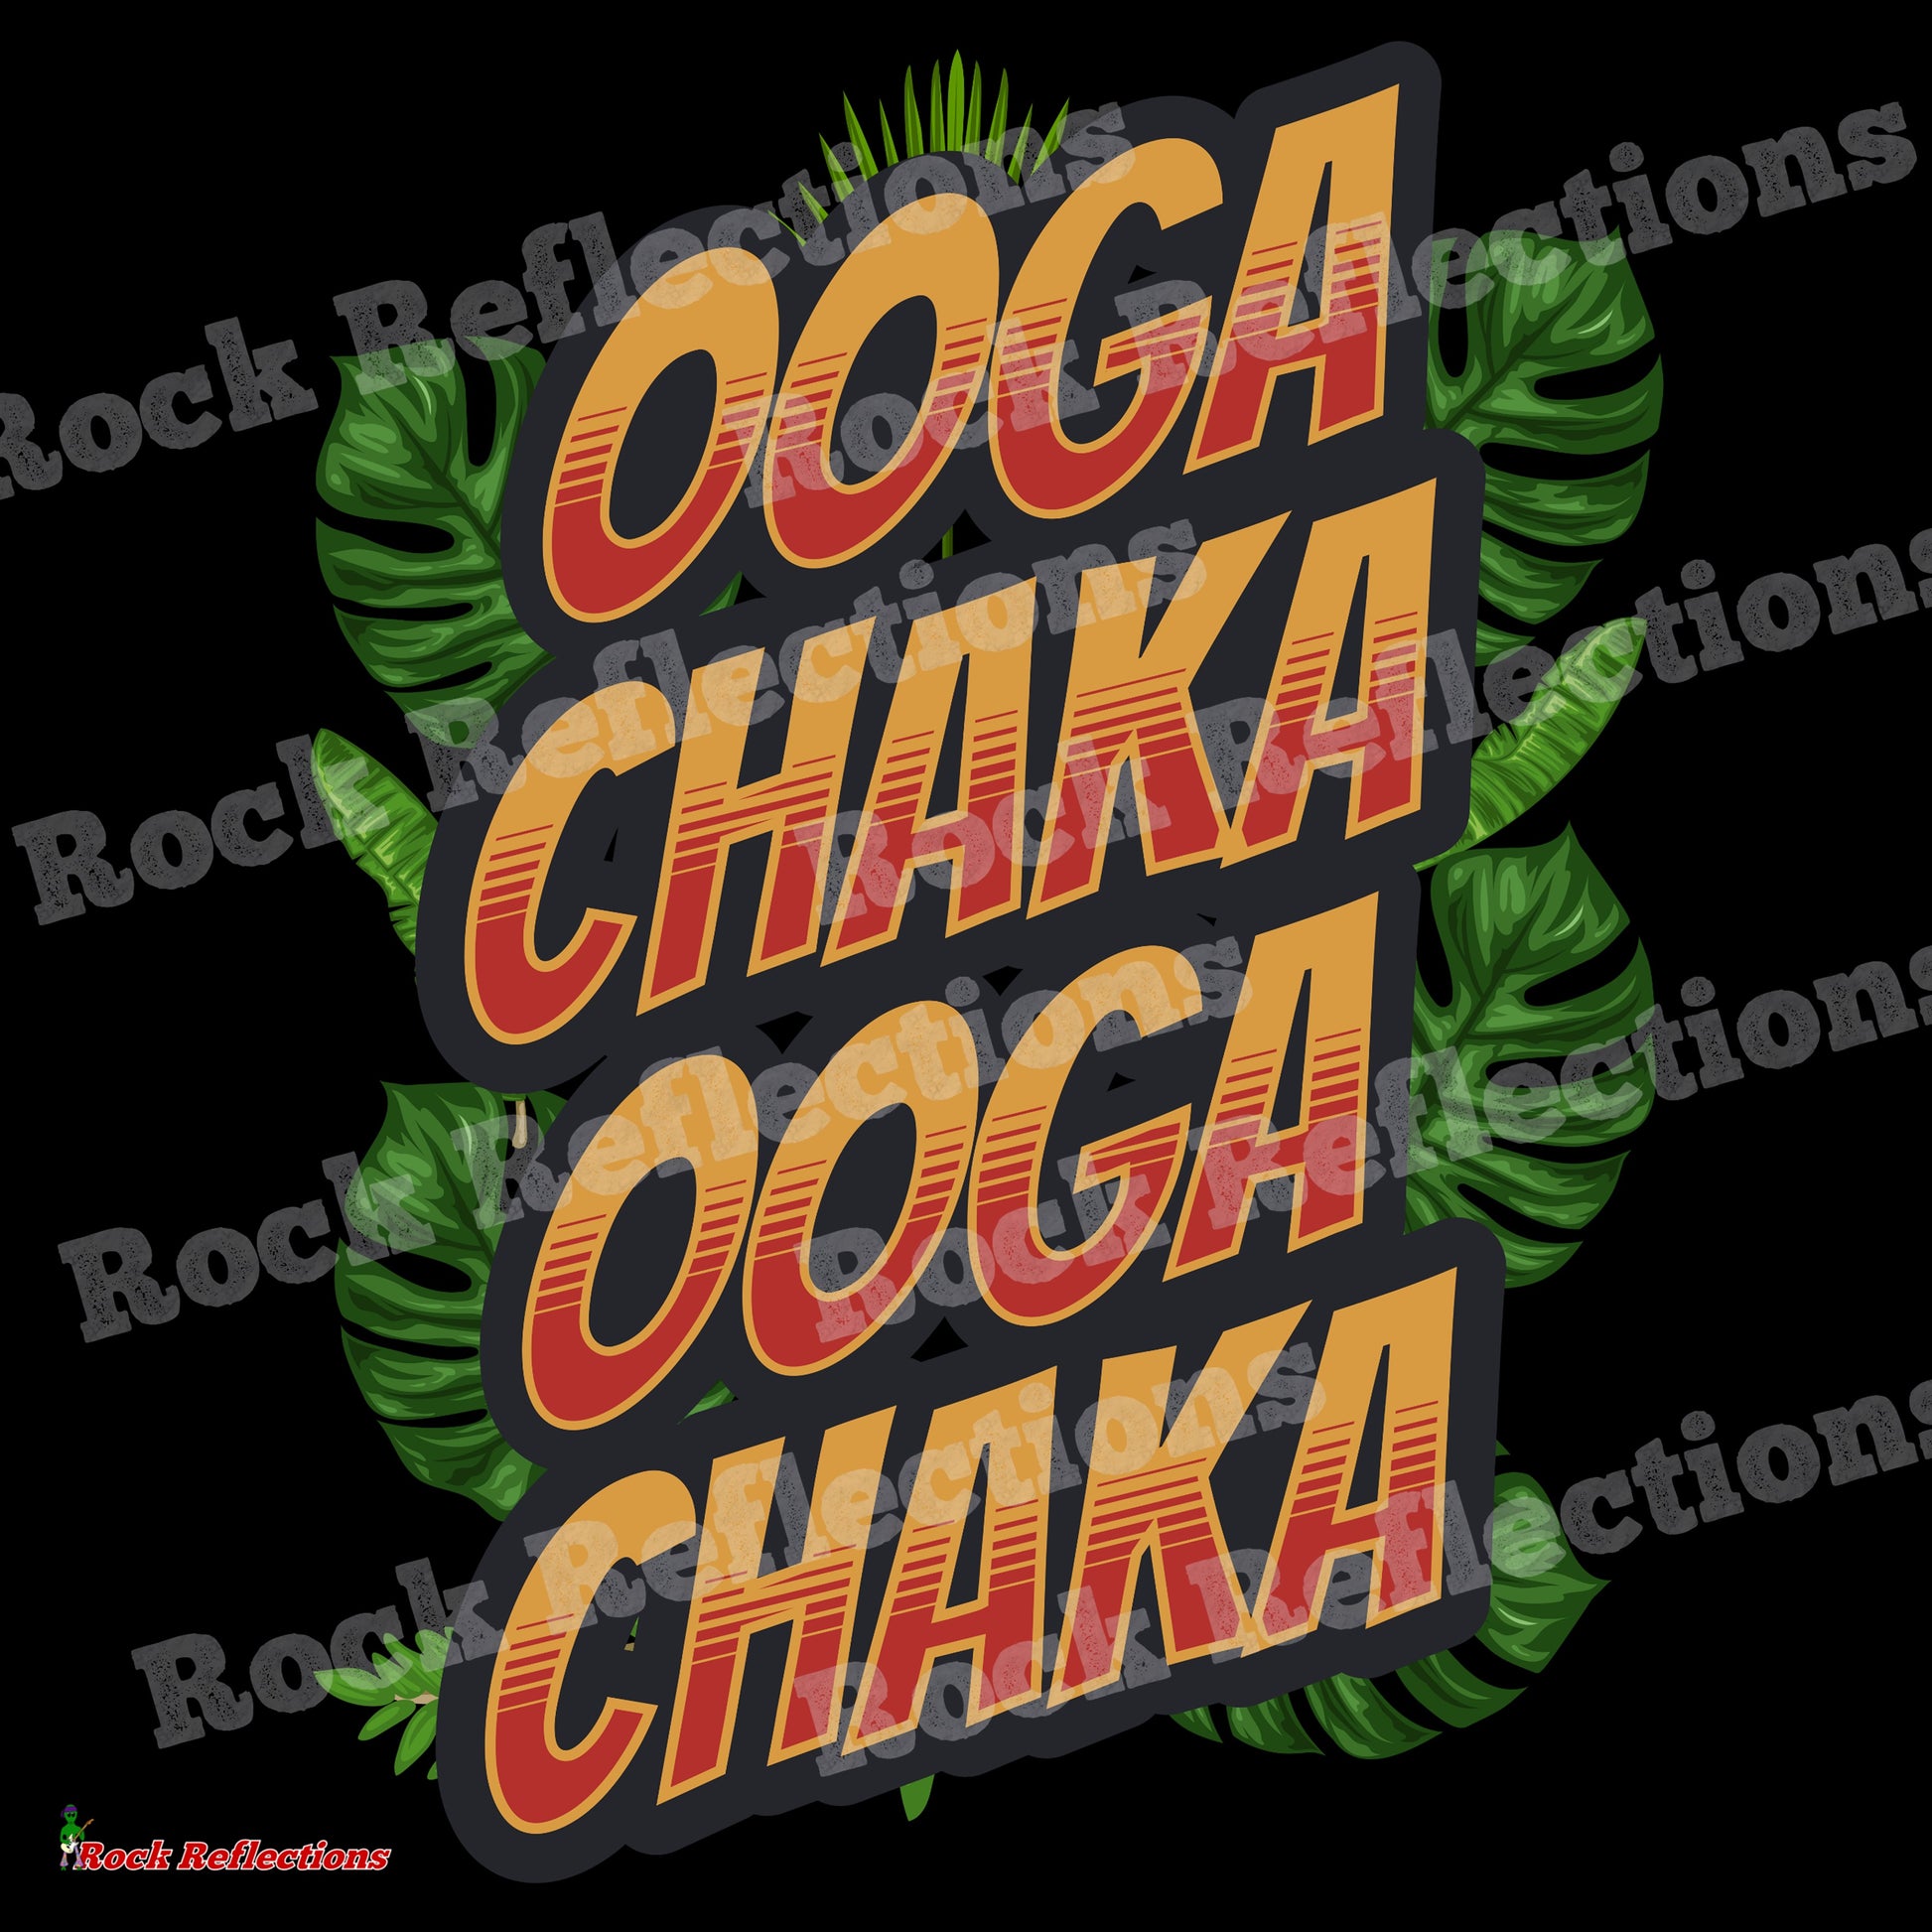 Ooga Chaka Black Mug CustomCat